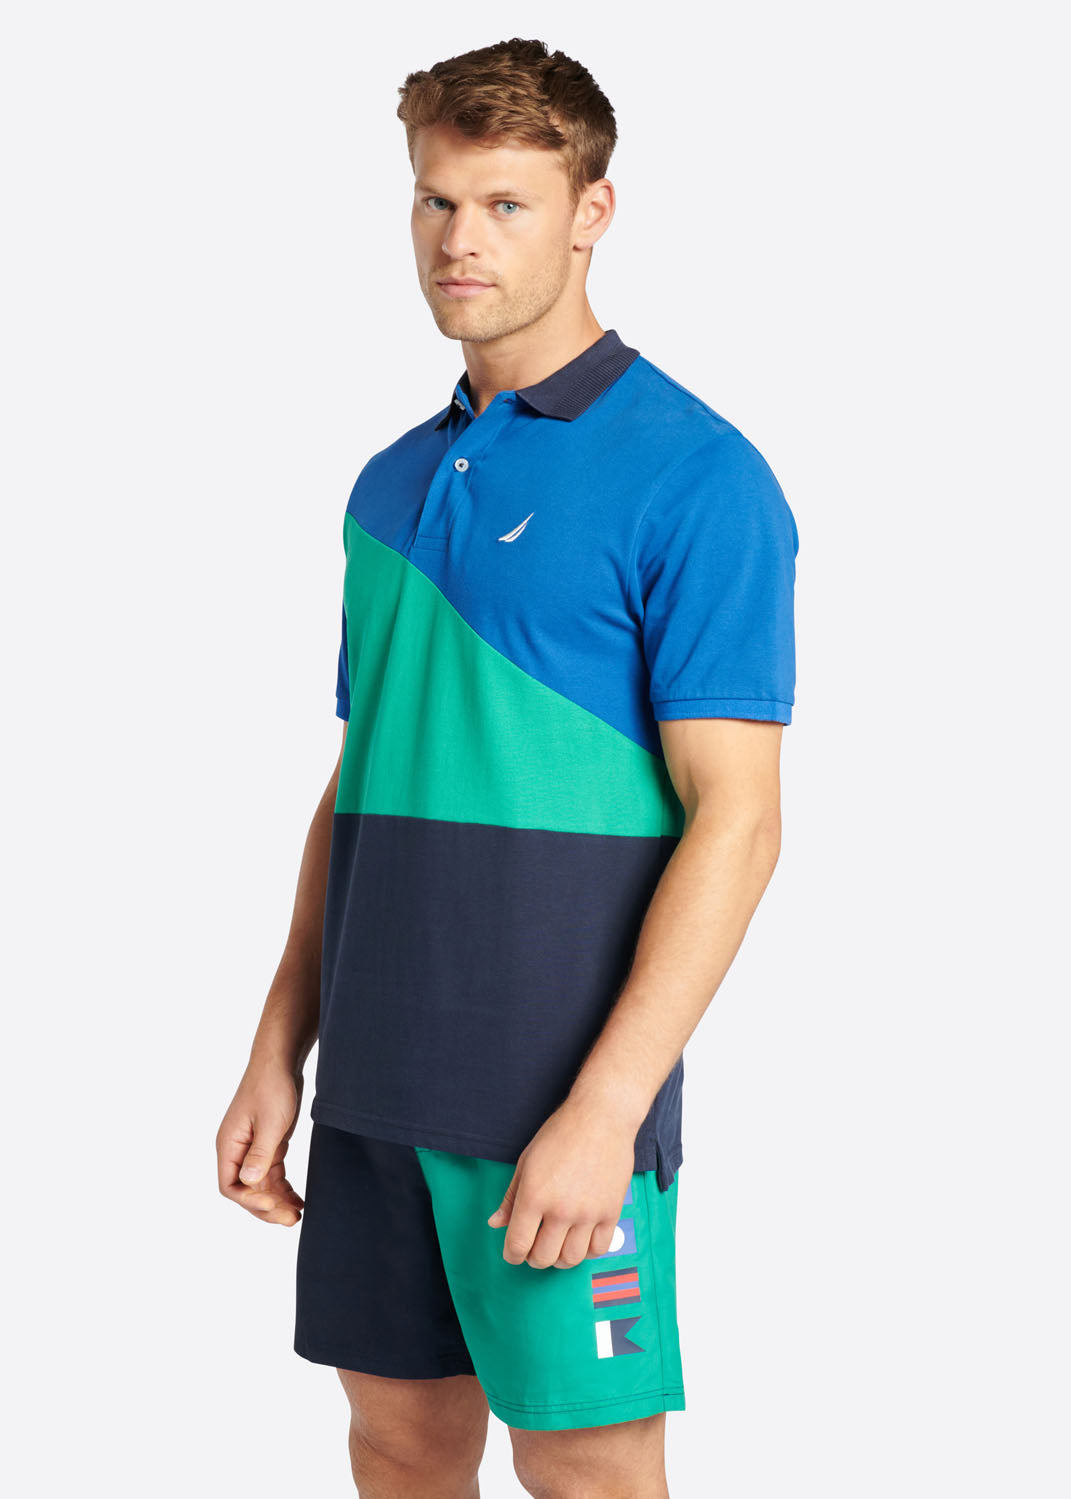 The Newman Polo-Shirt